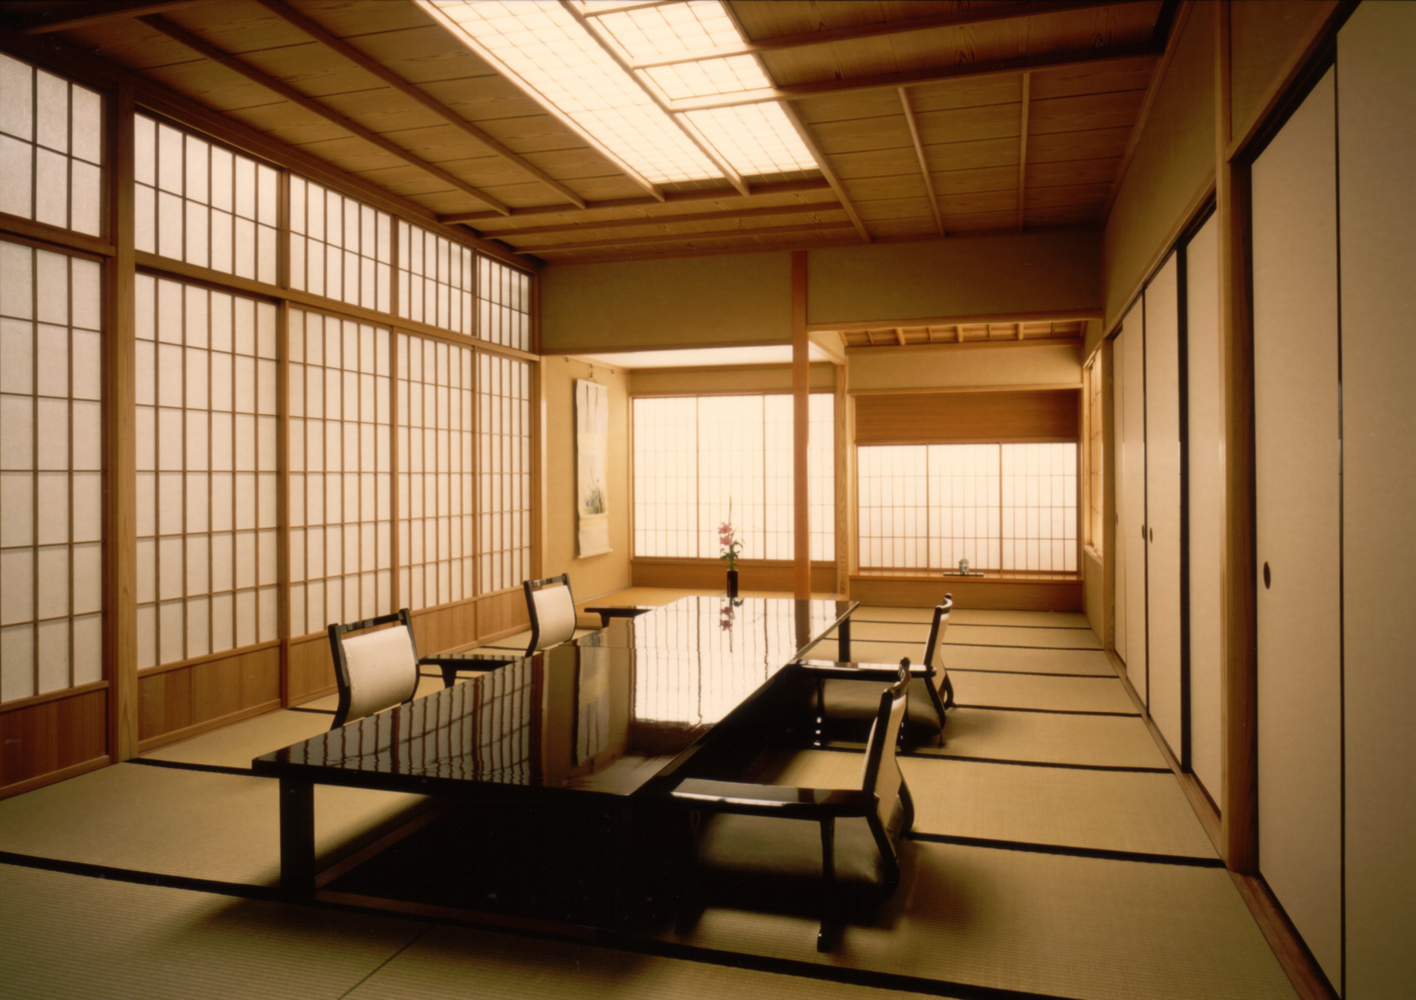 日本の古き良き文化を残す伝統的な雰囲気を大切にした室内デザイン